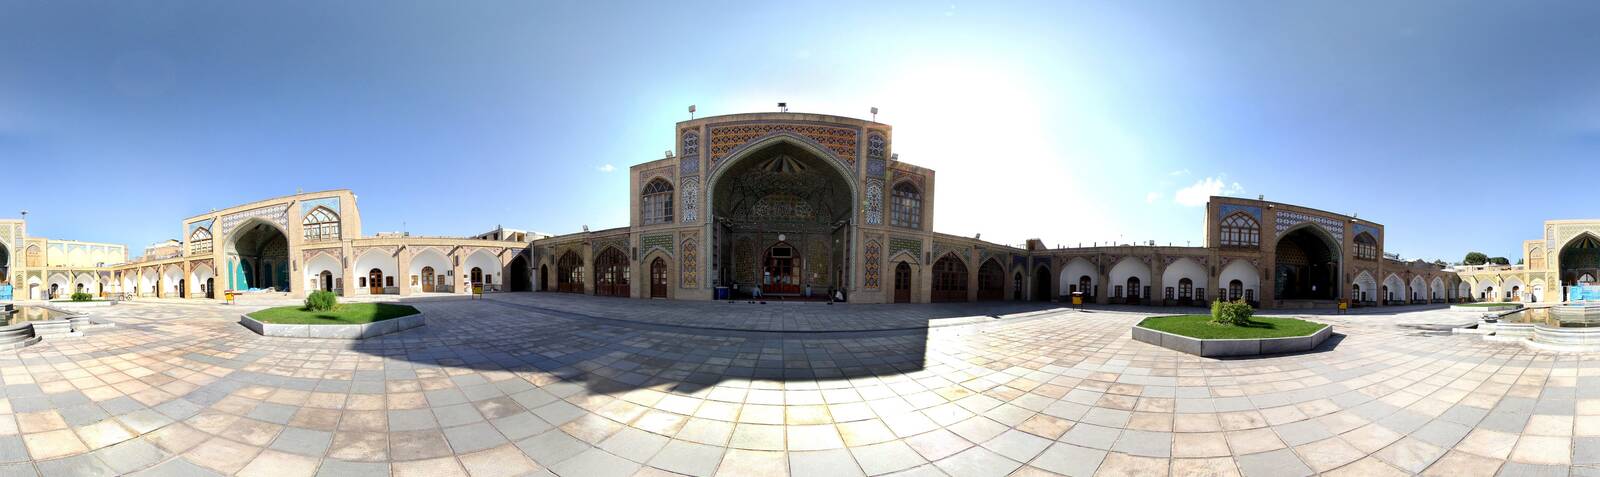 مسجد جامع زنجان (مسجد سيد)